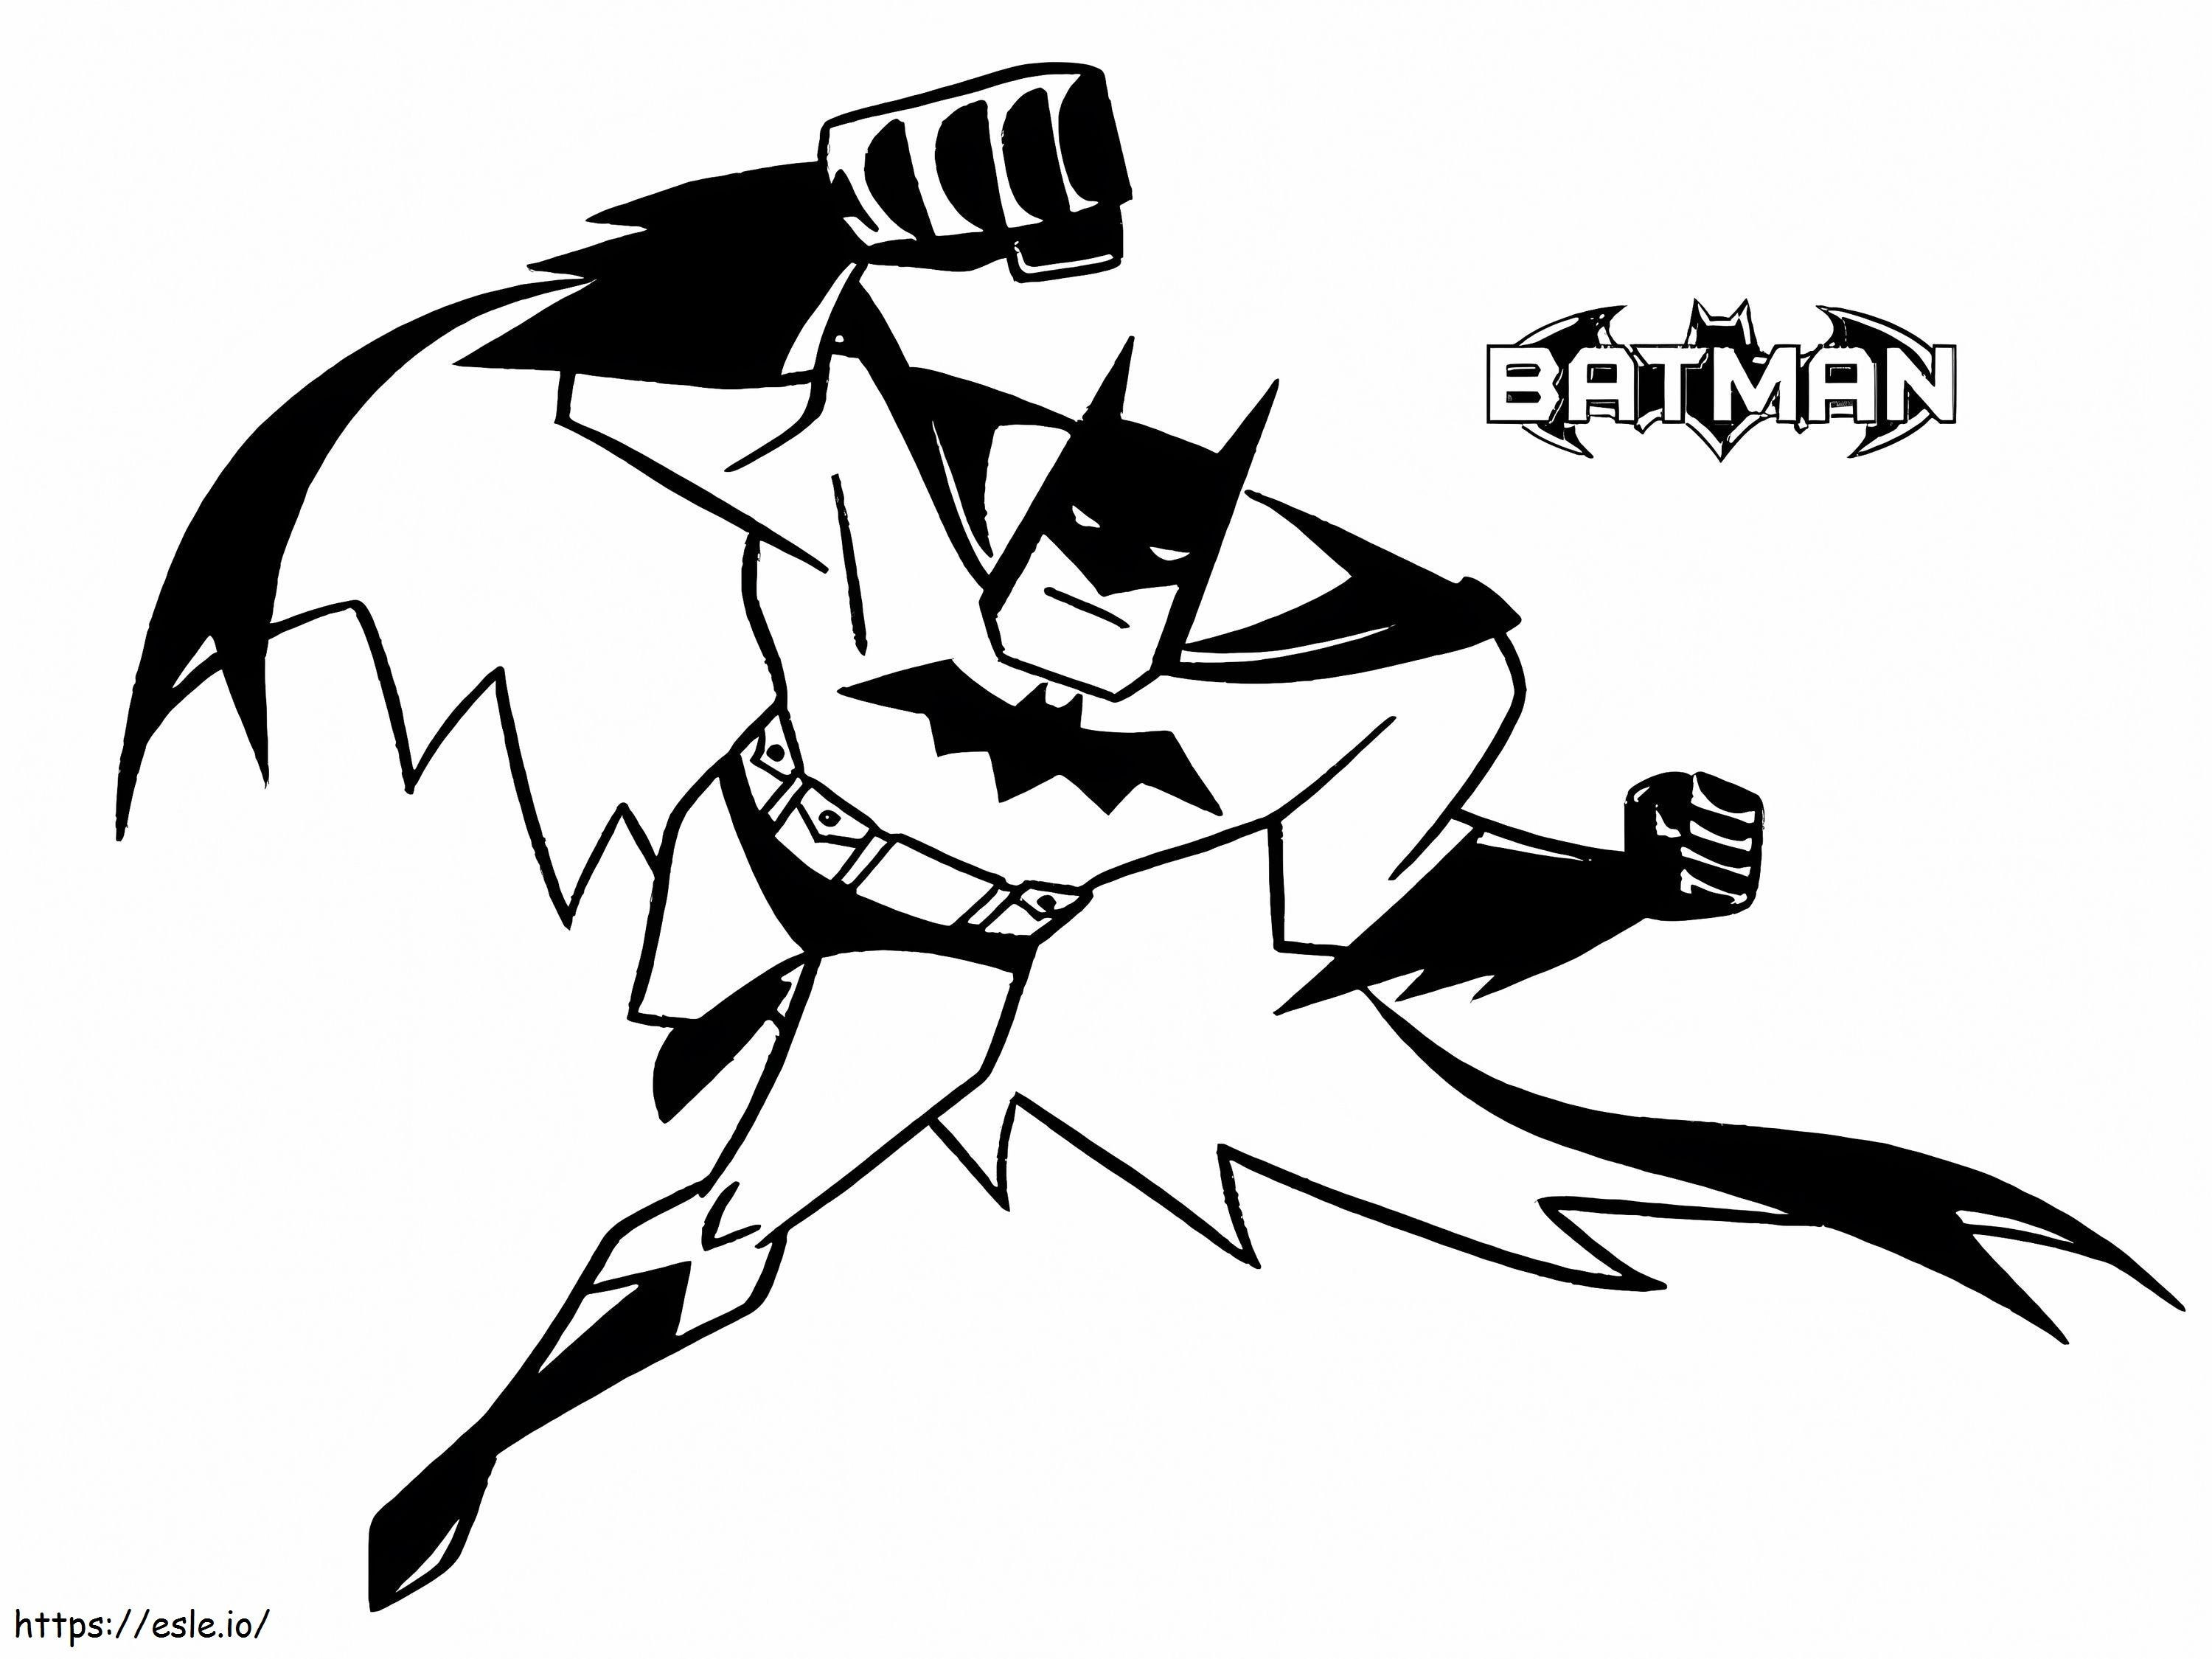 Serie animata Batman da colorare